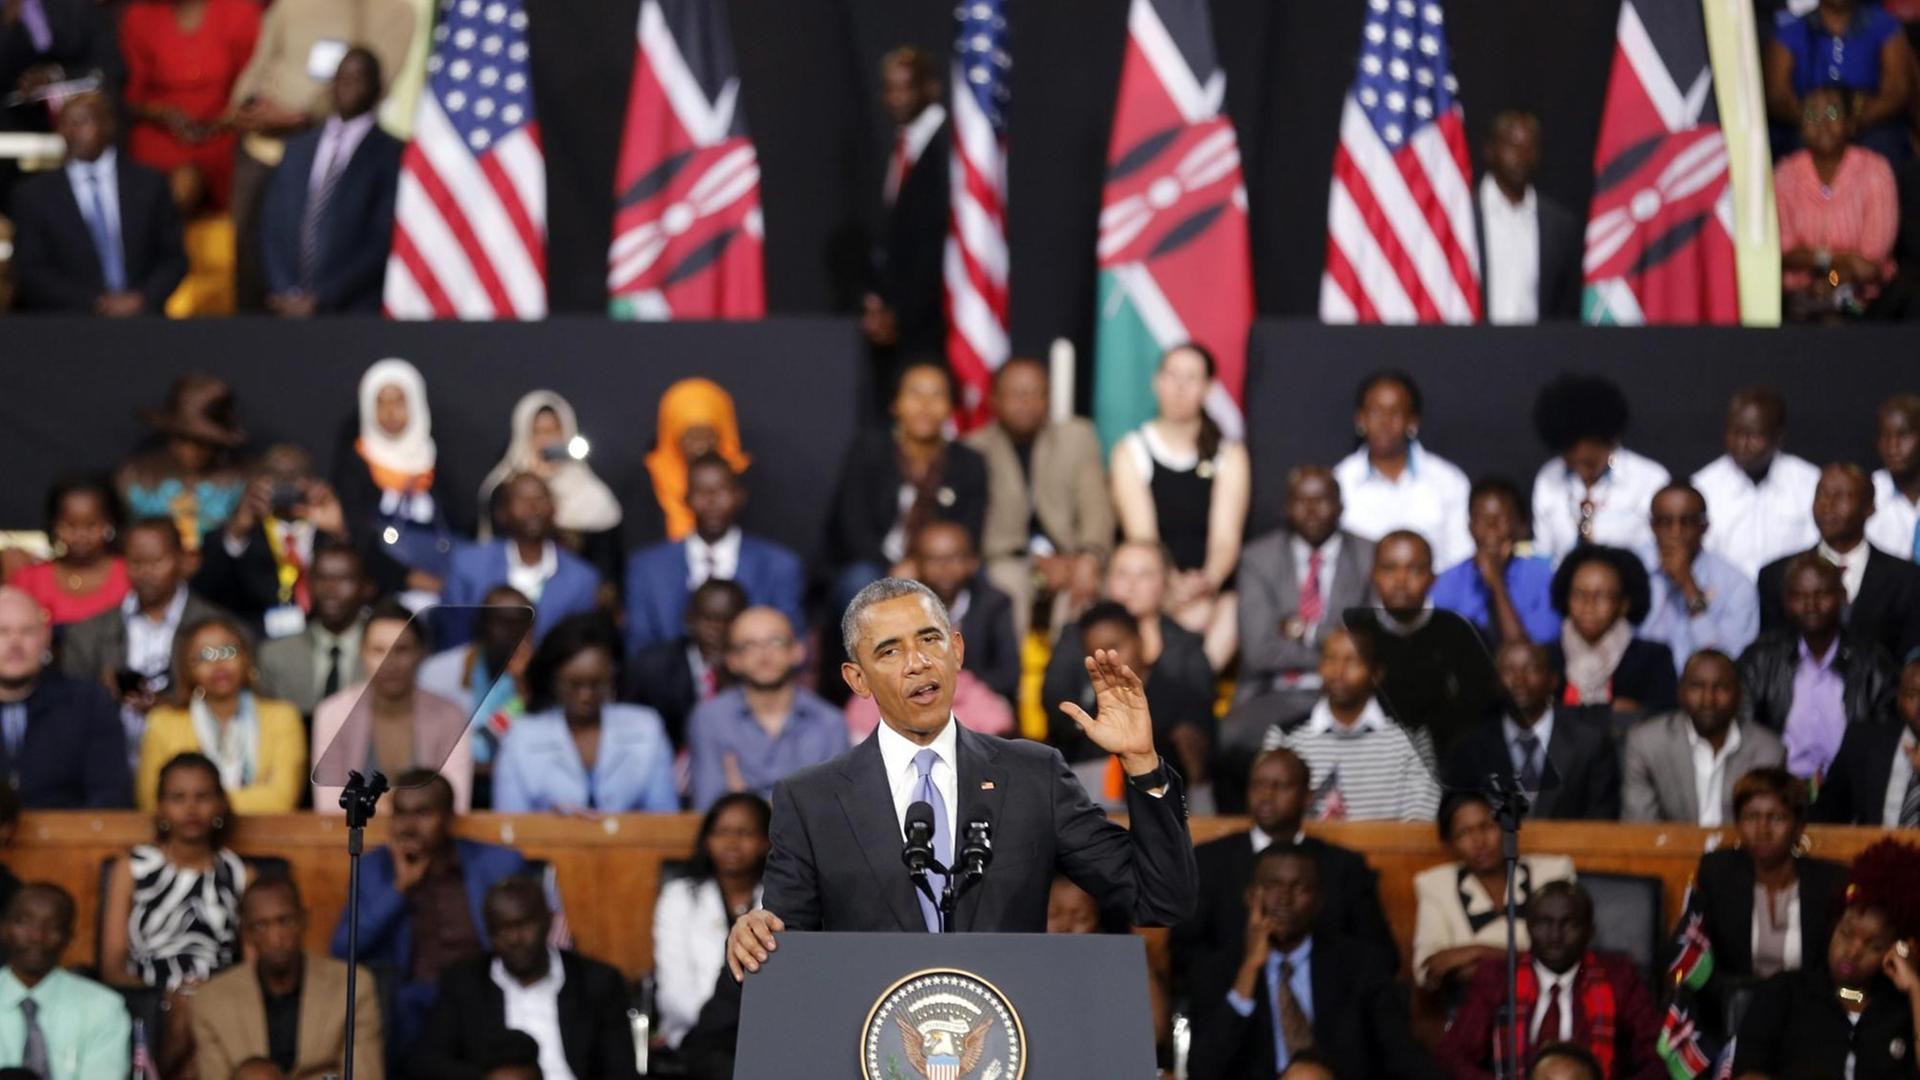 Der Präsident von dem Land USA hält eine Rede in dem Land Kenia